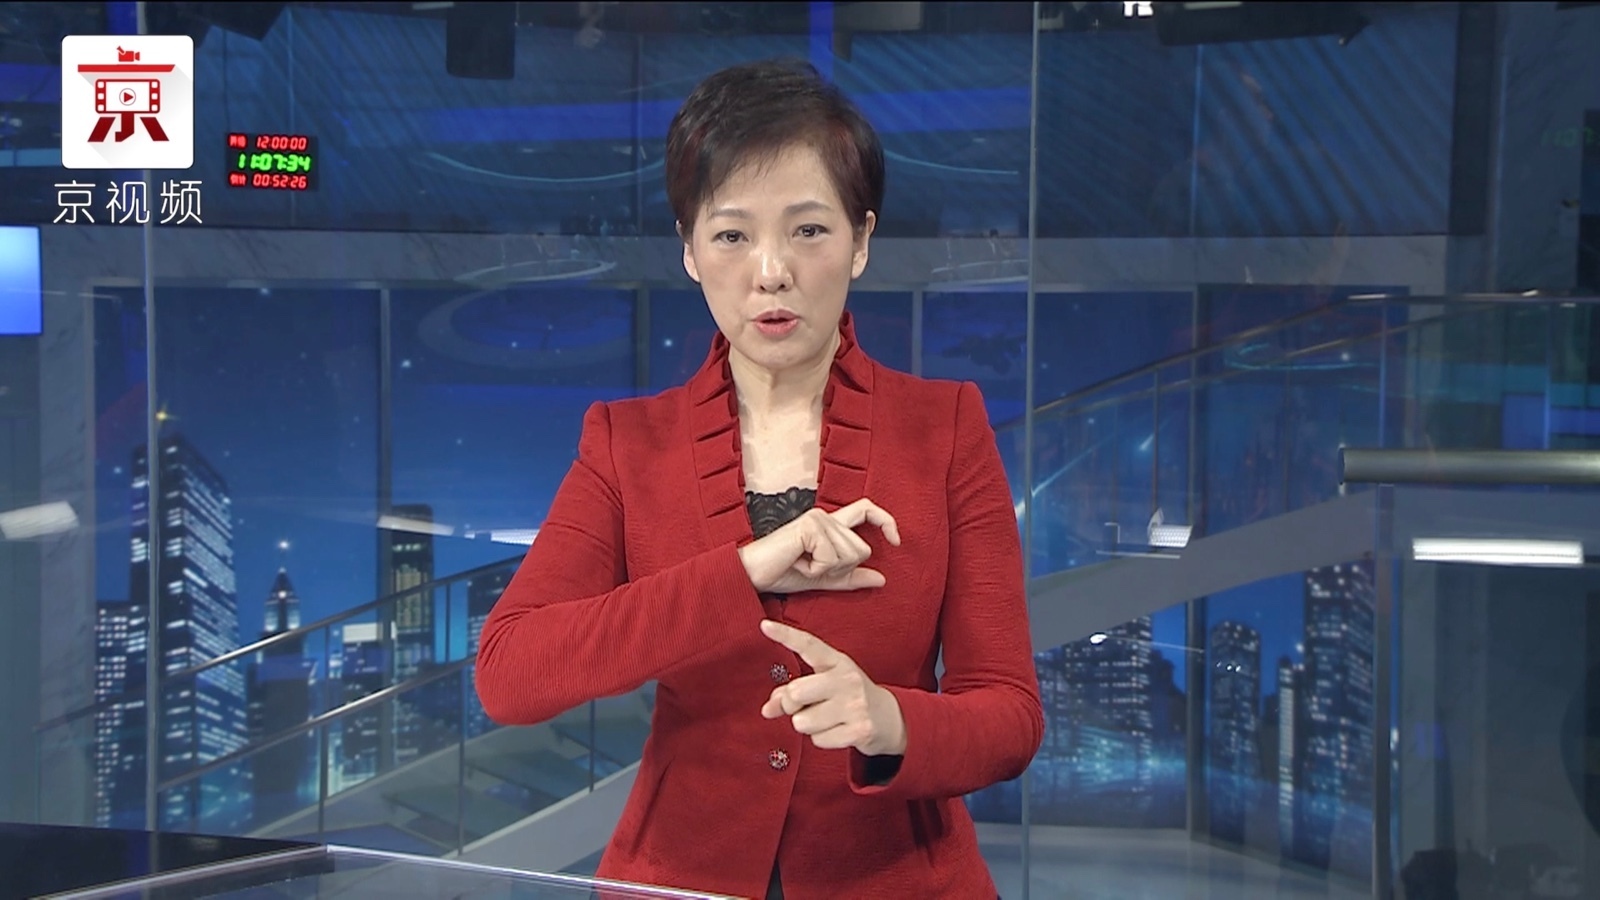 体现城市温度!3月1日起《北京新闻》将增设手语播报